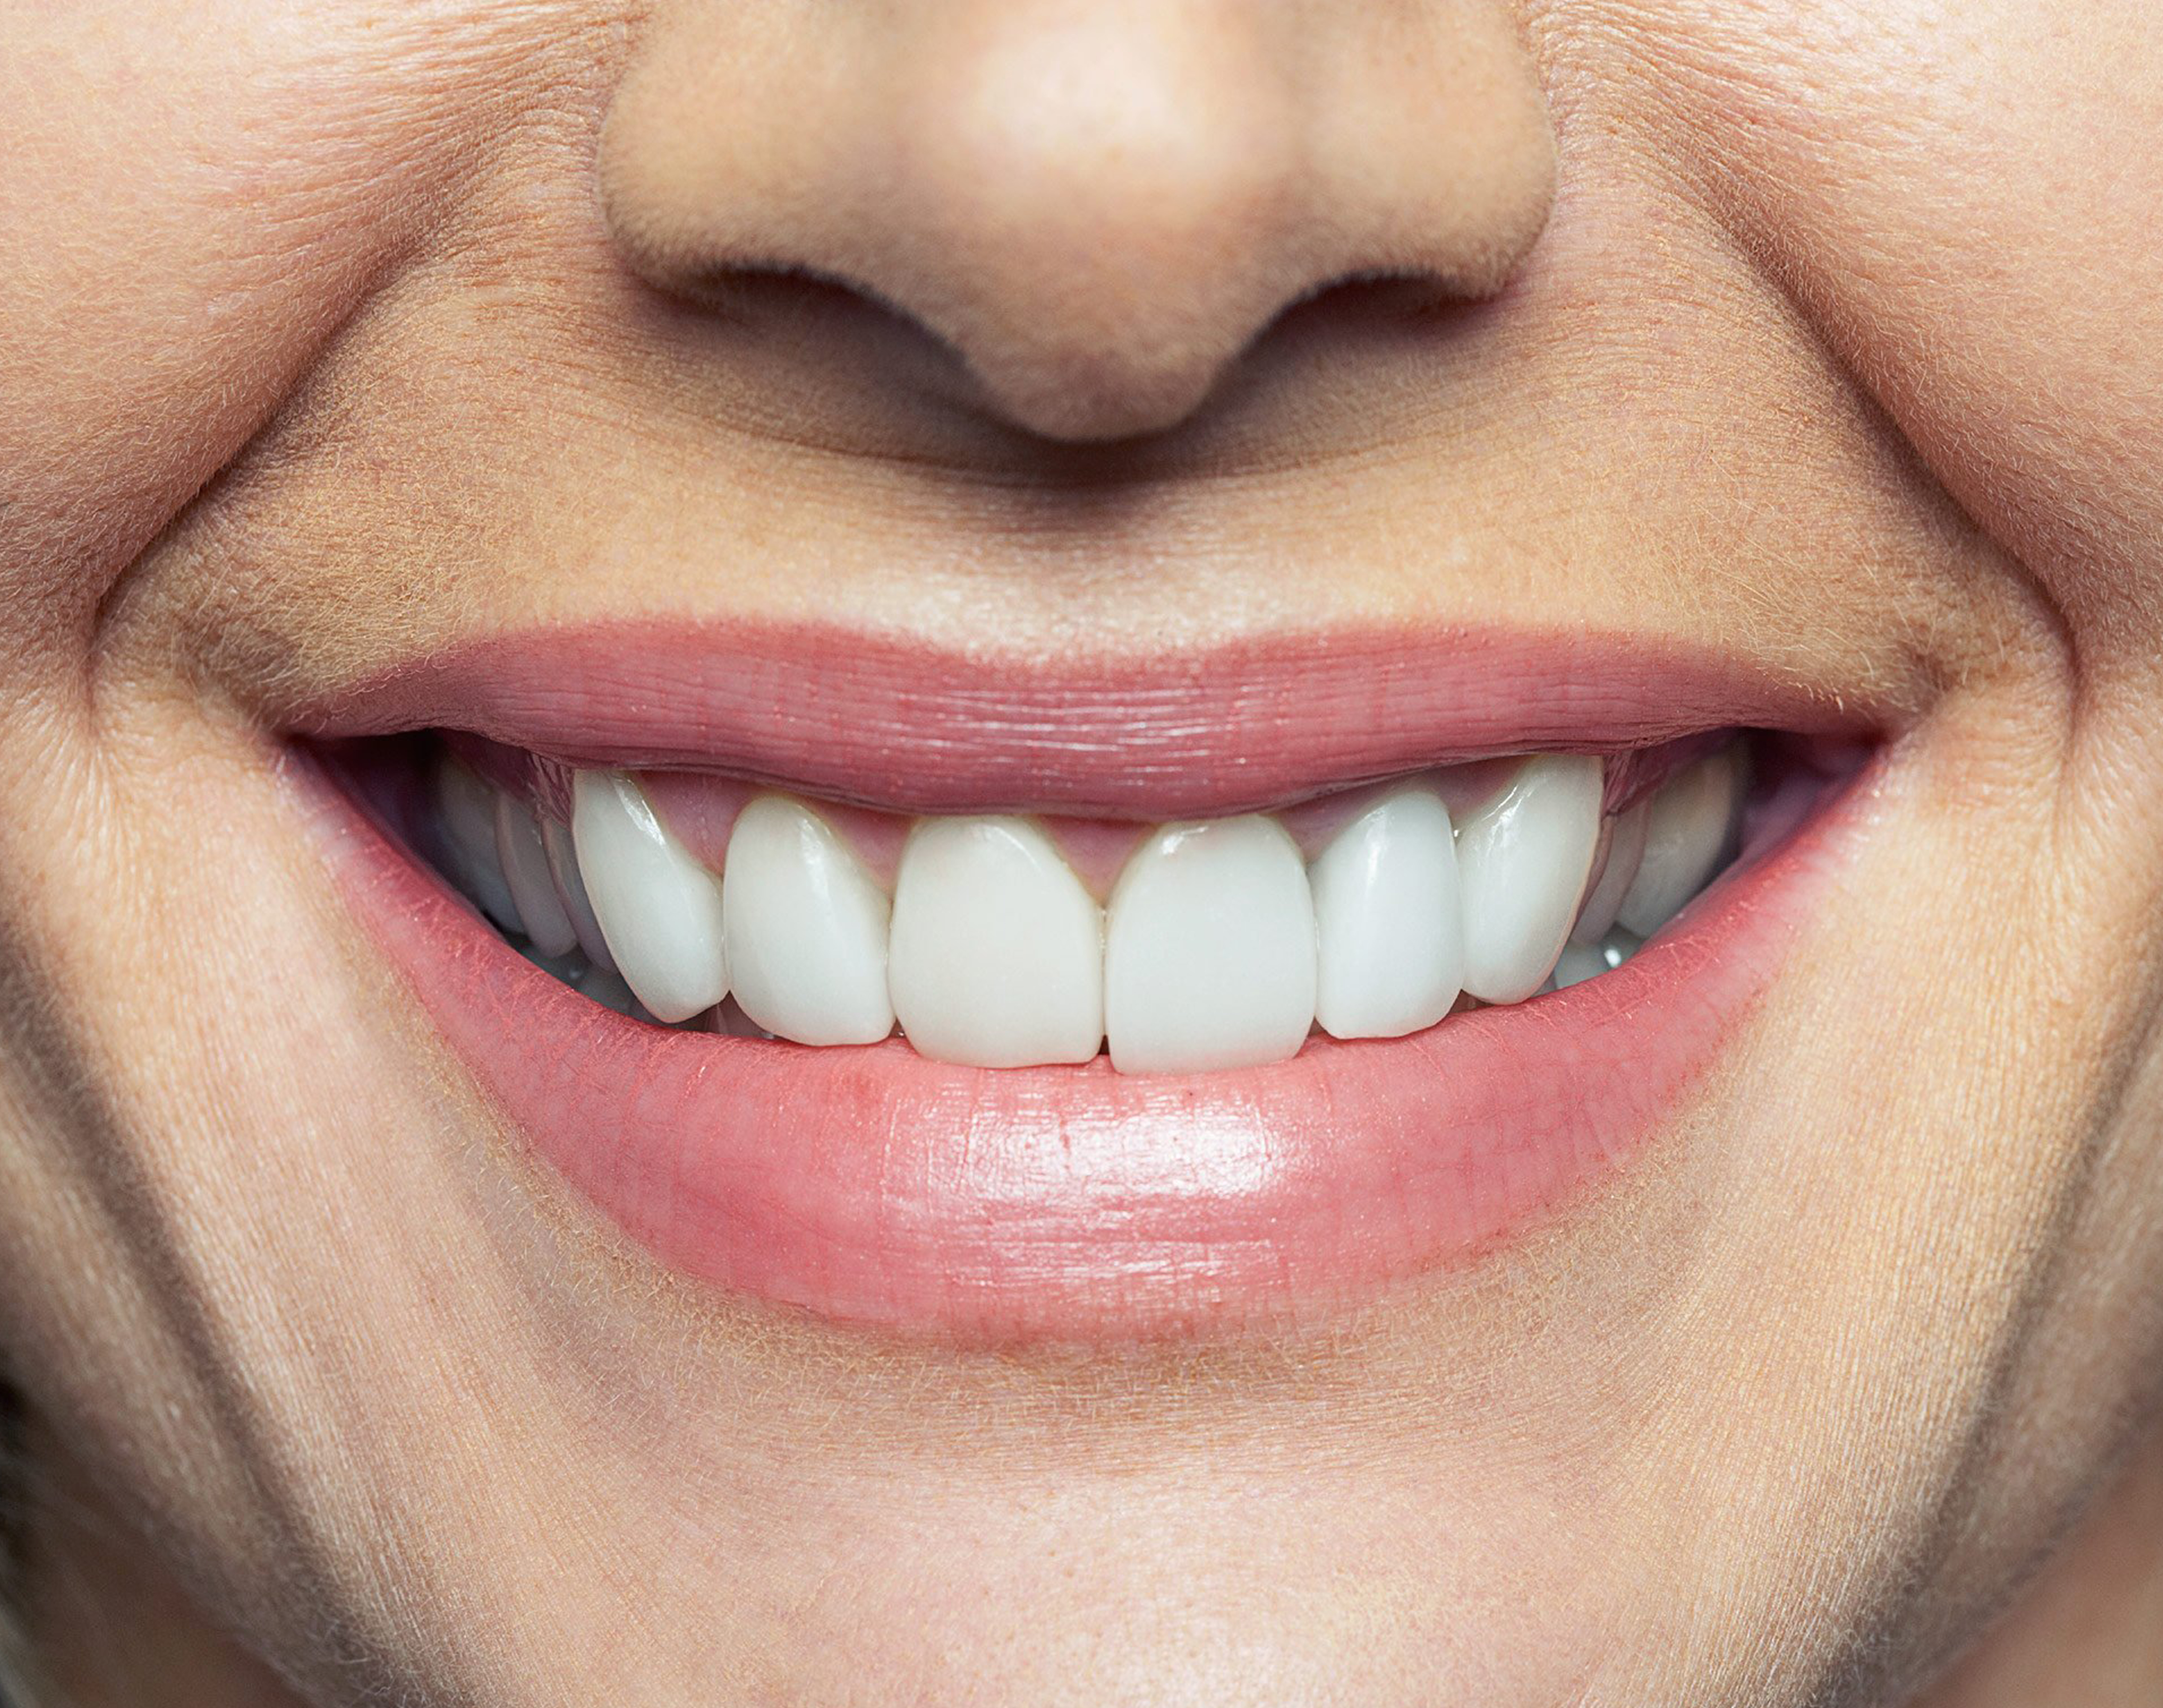 Клык фото зуба. Красивые зубы. Ровные зубы. Красивая форма зубов. Красивые ровные зубы.